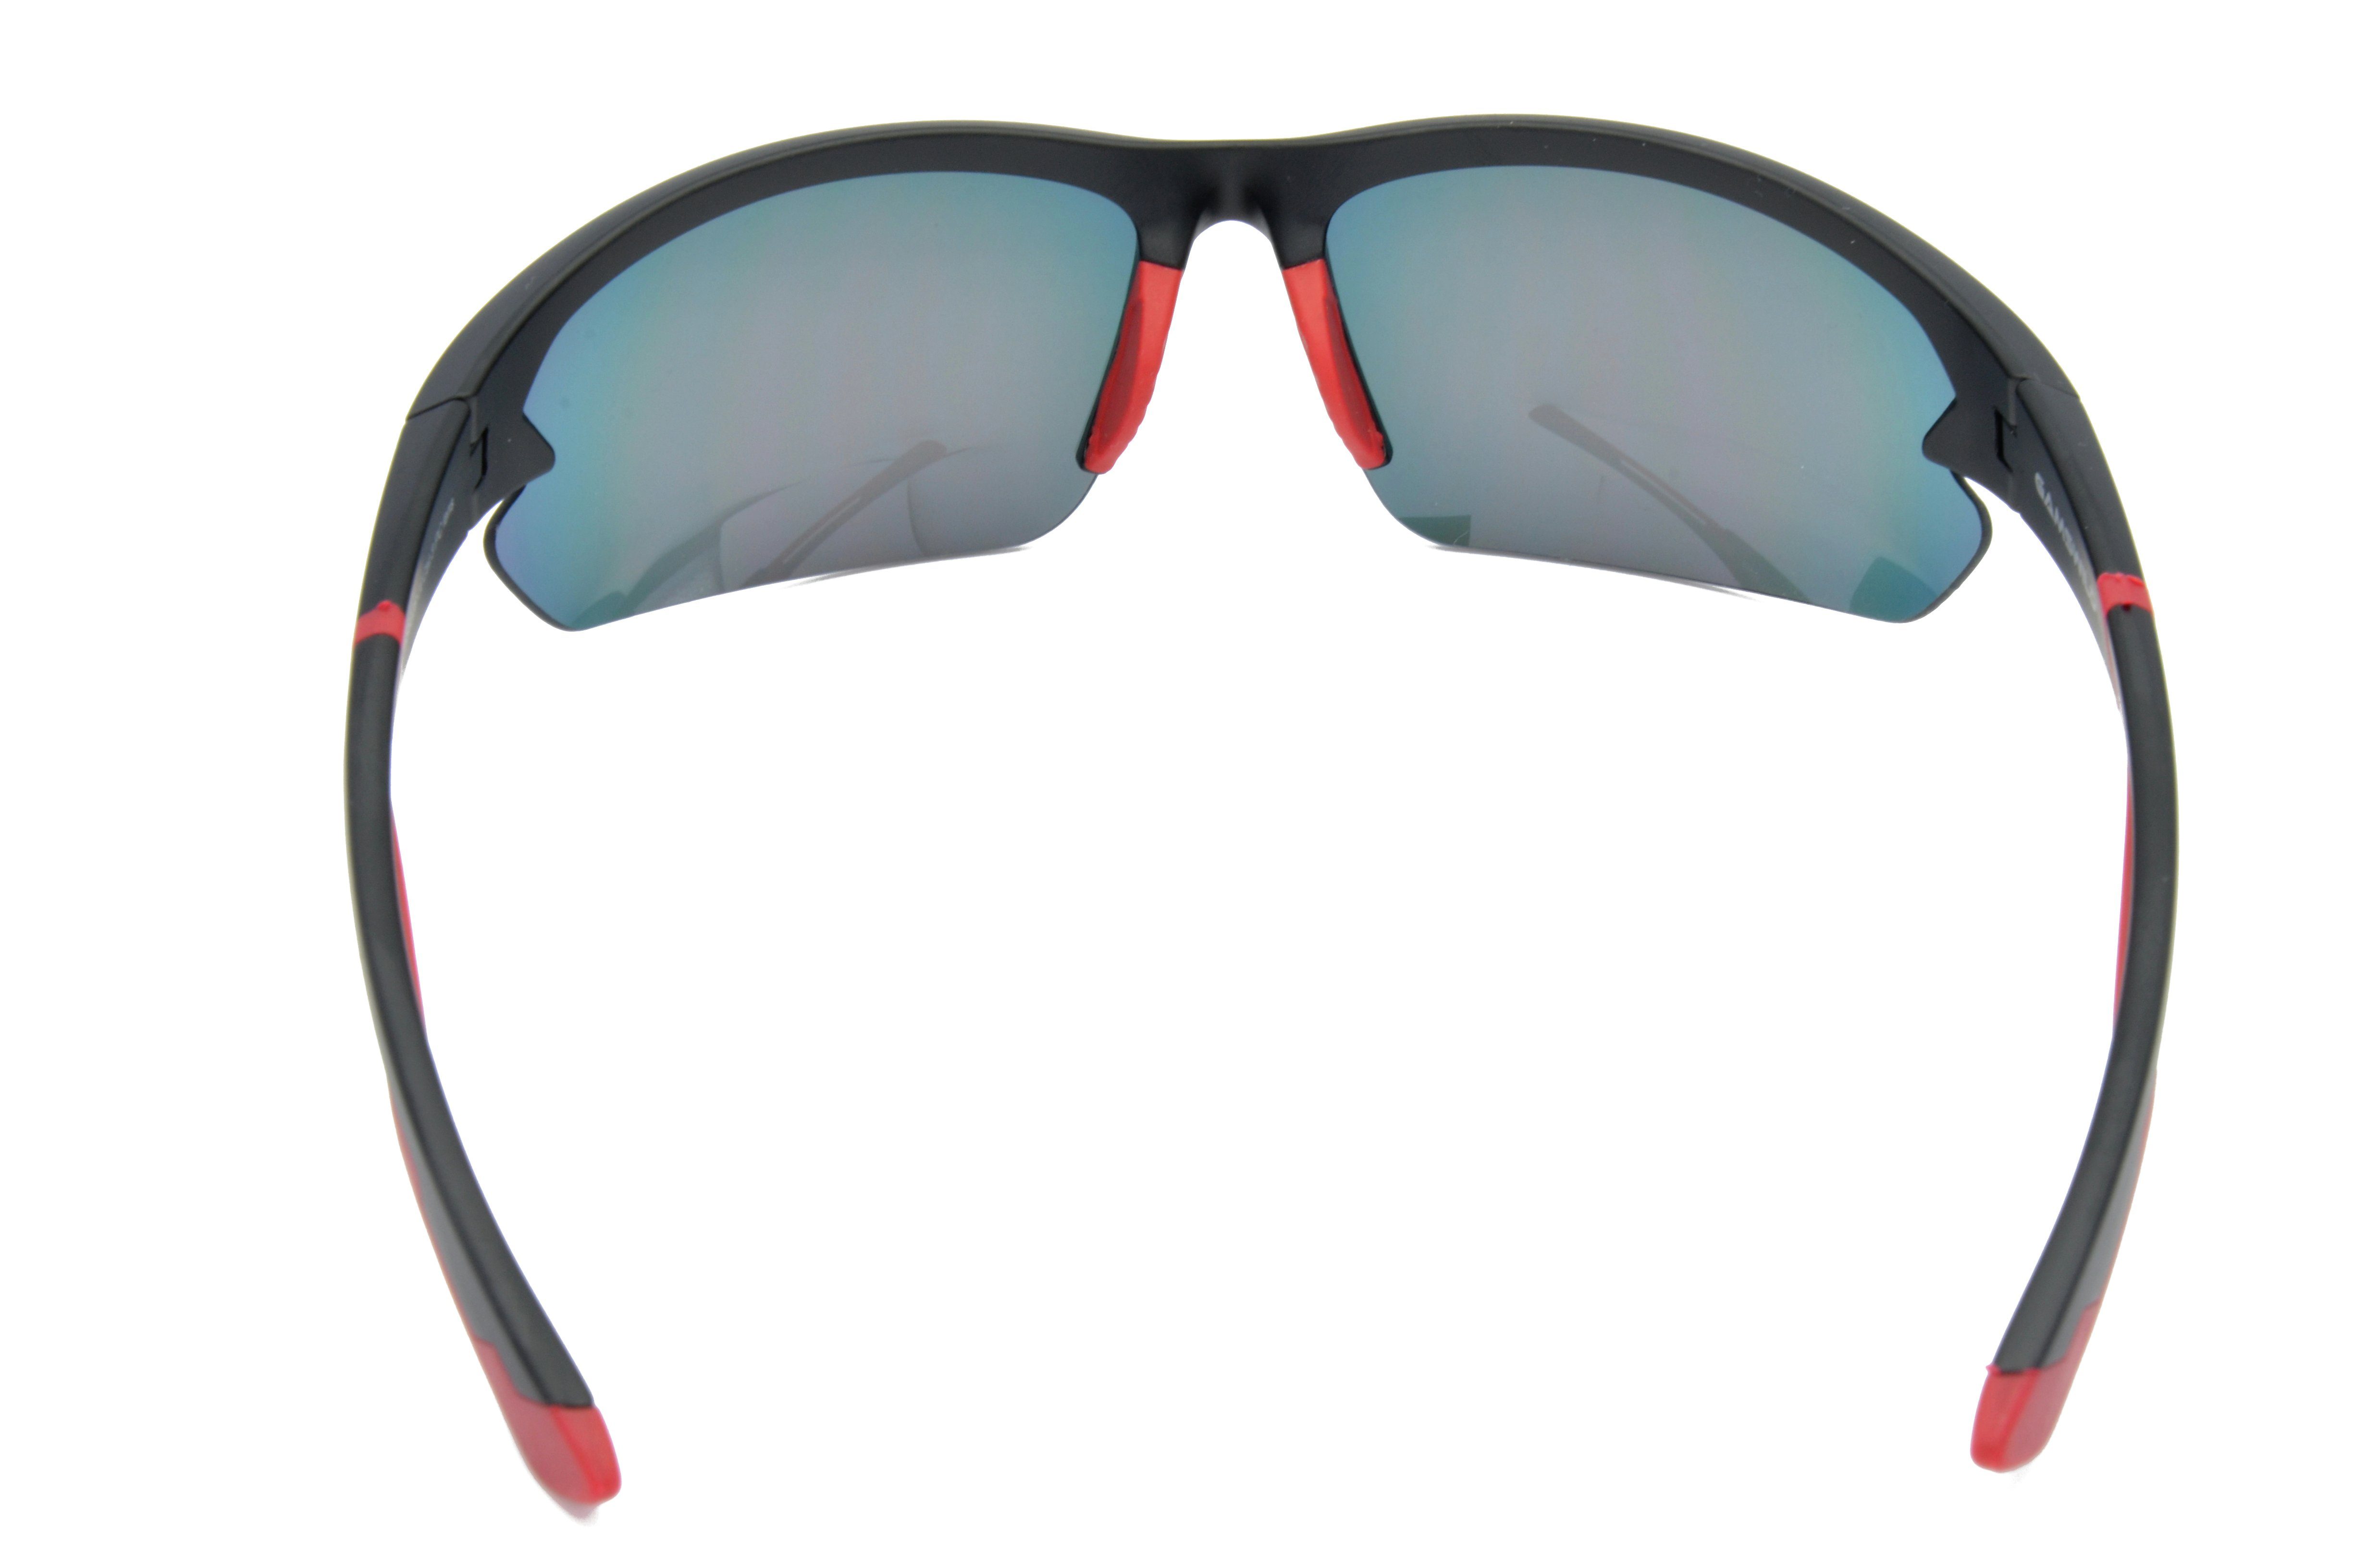 violett, blau, Halbrahmenbrille Sonnenbrille Gamswild Sportbrille Skibrille Damen rot-orange, Herren Unisex, Fahrradbrille WS6028